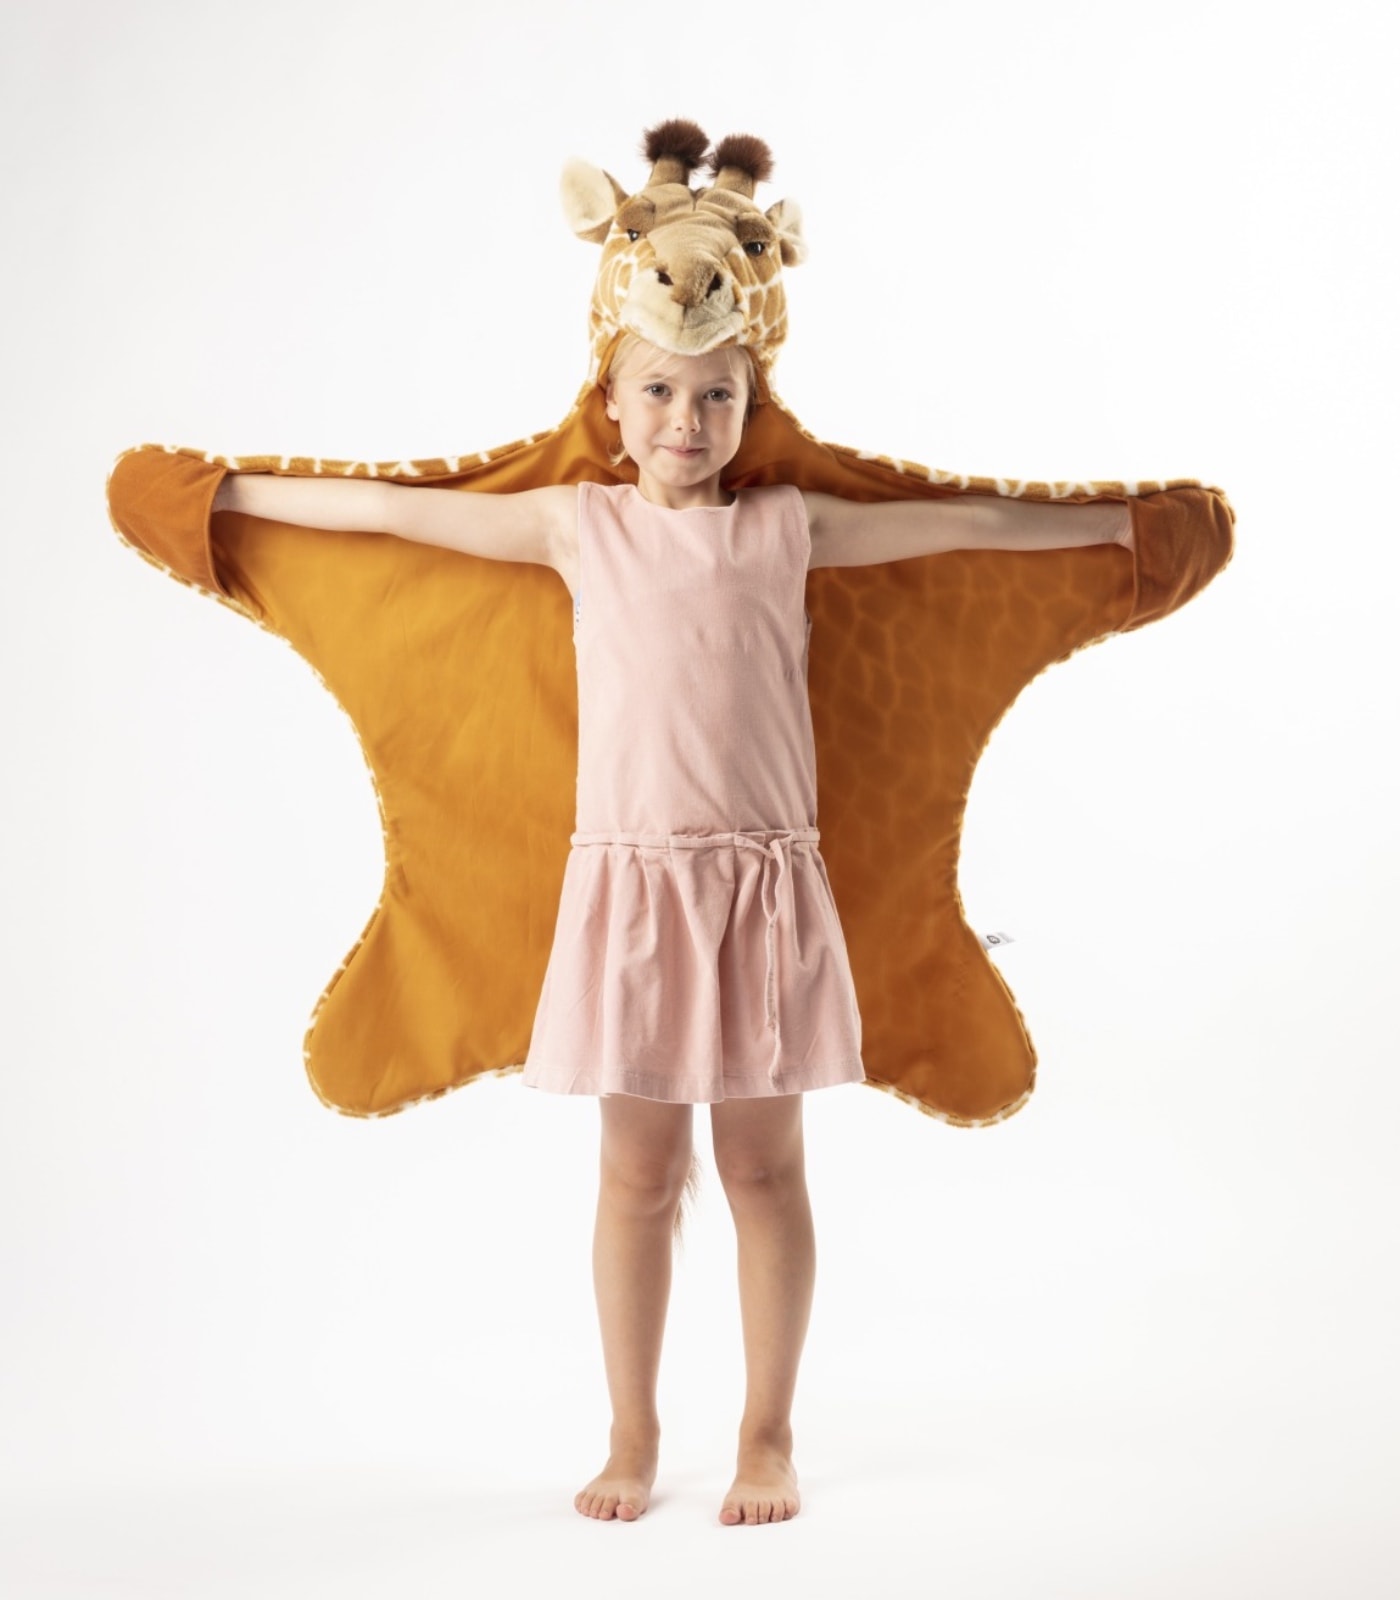 Kinderkostüm zu Fasching und zum Verkleiden: Giraffe von Wild & Soft // HIMBEER